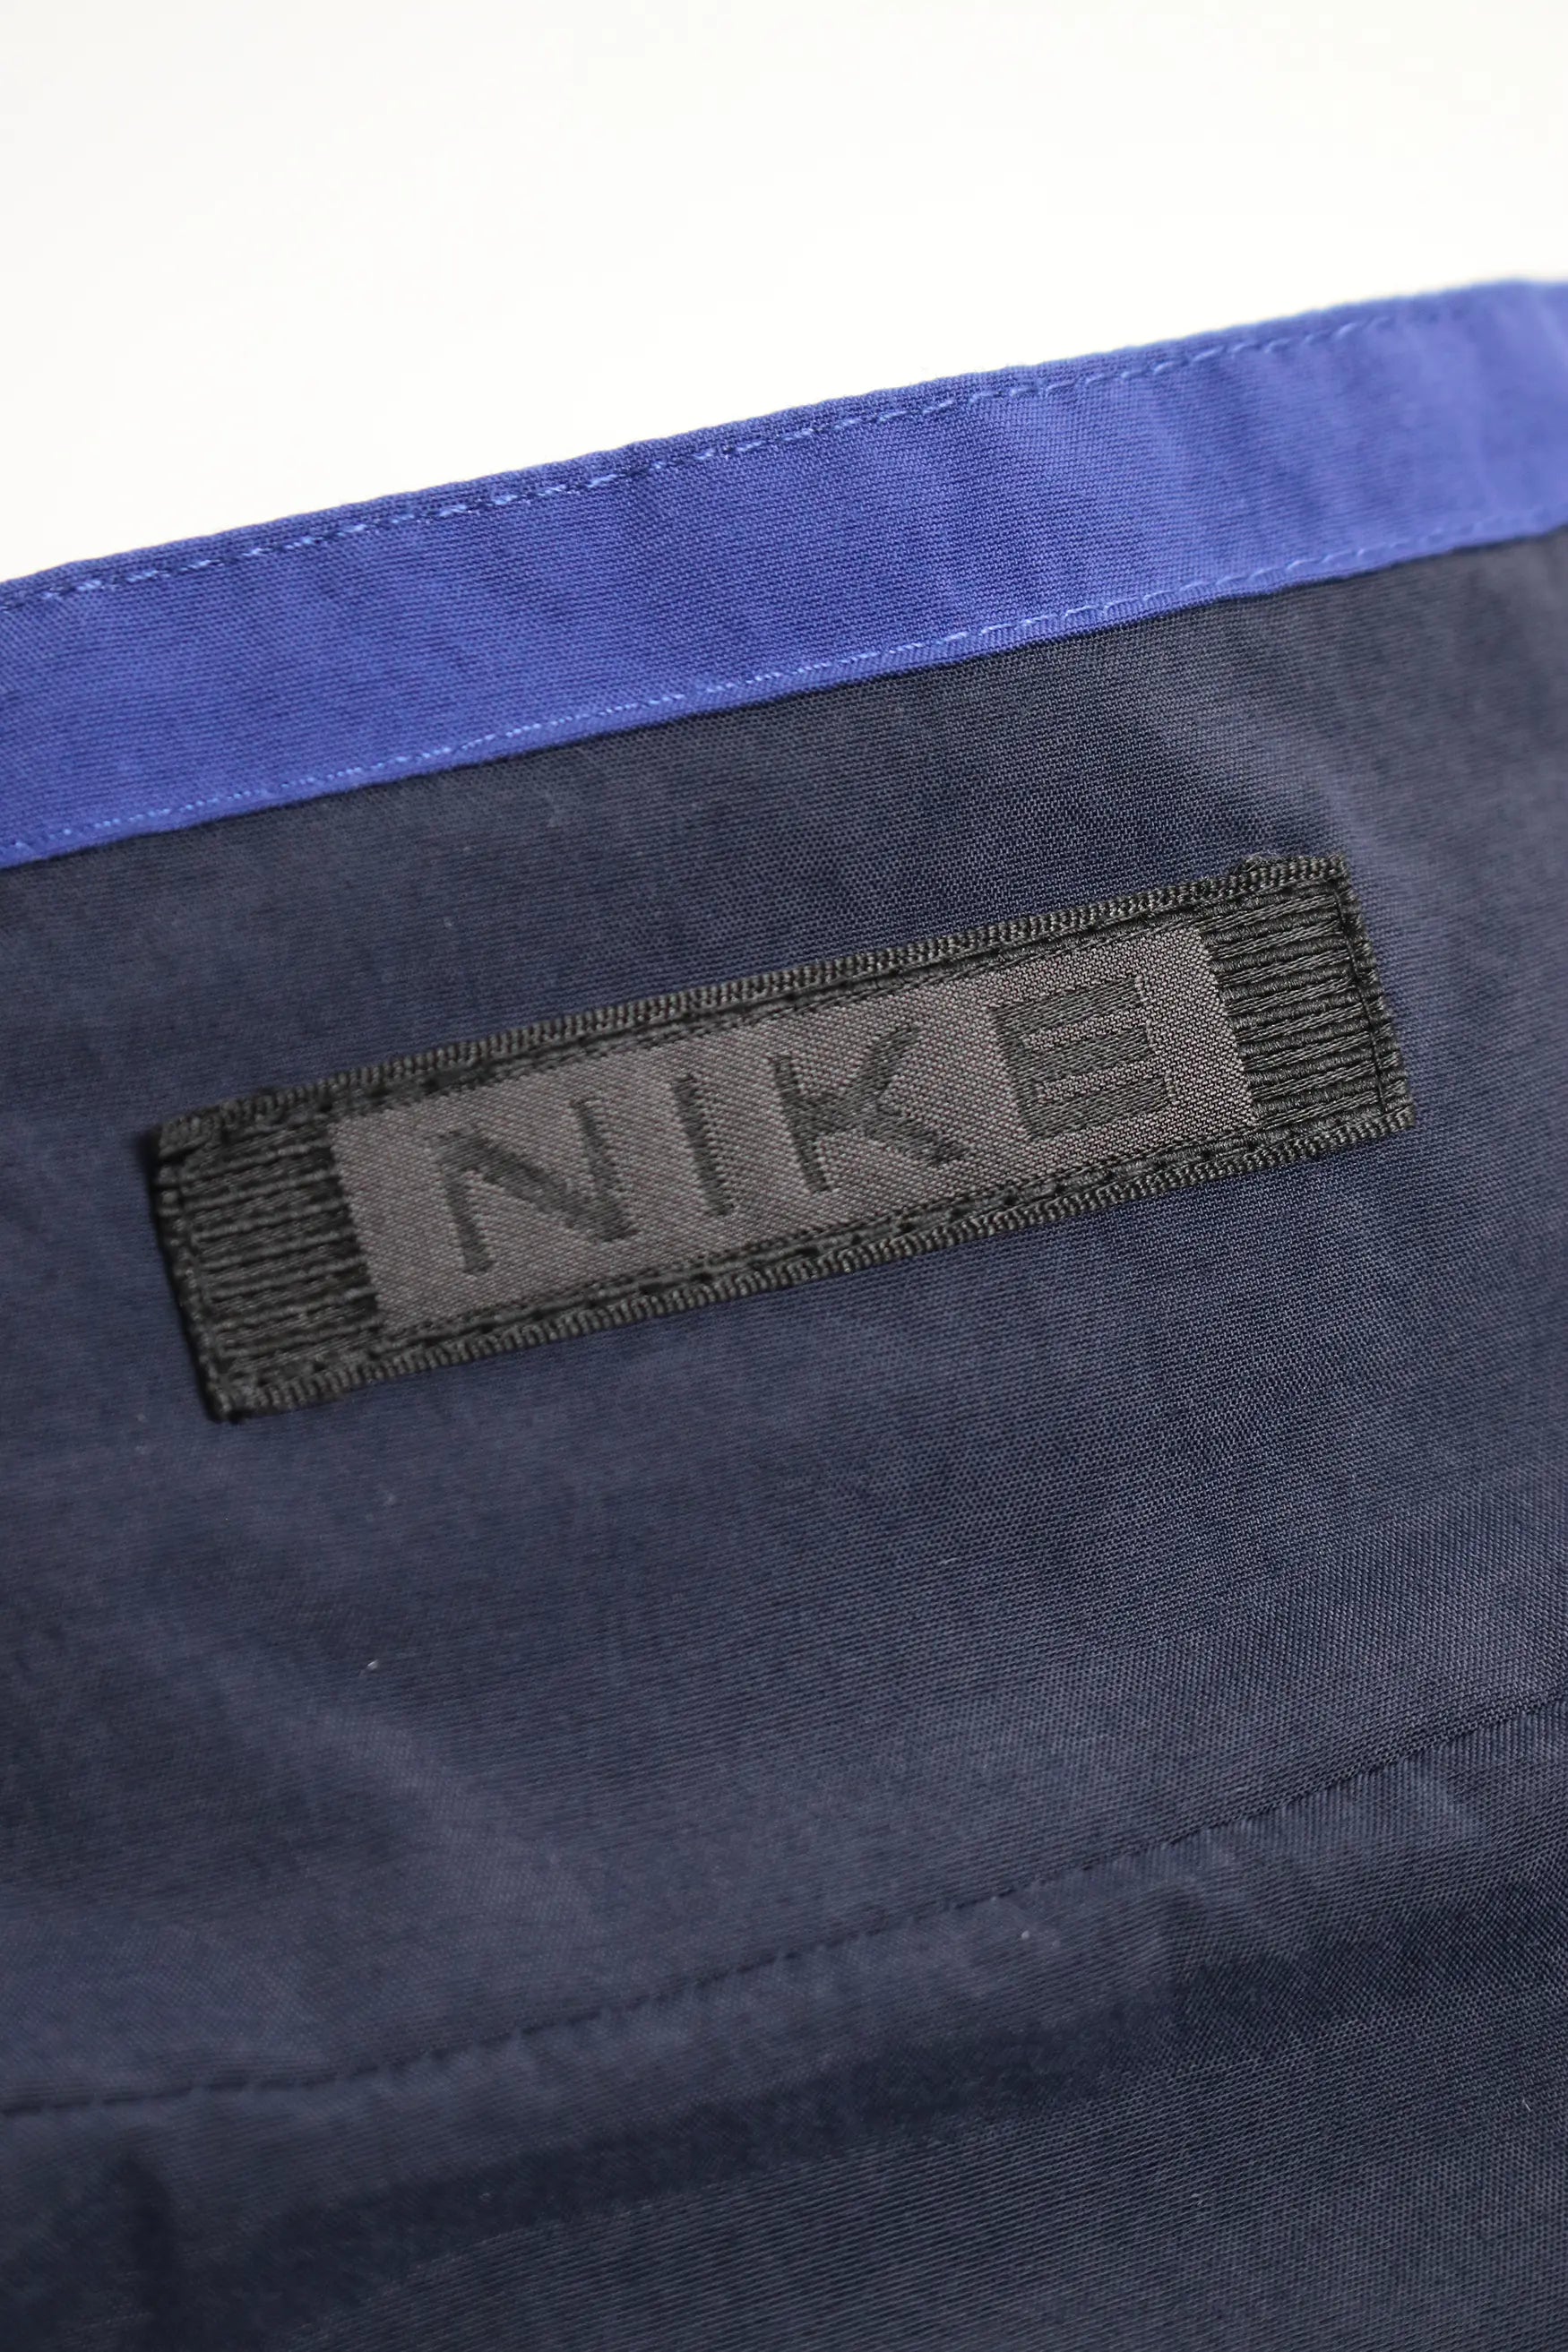 Nike Vintage Tracksuit